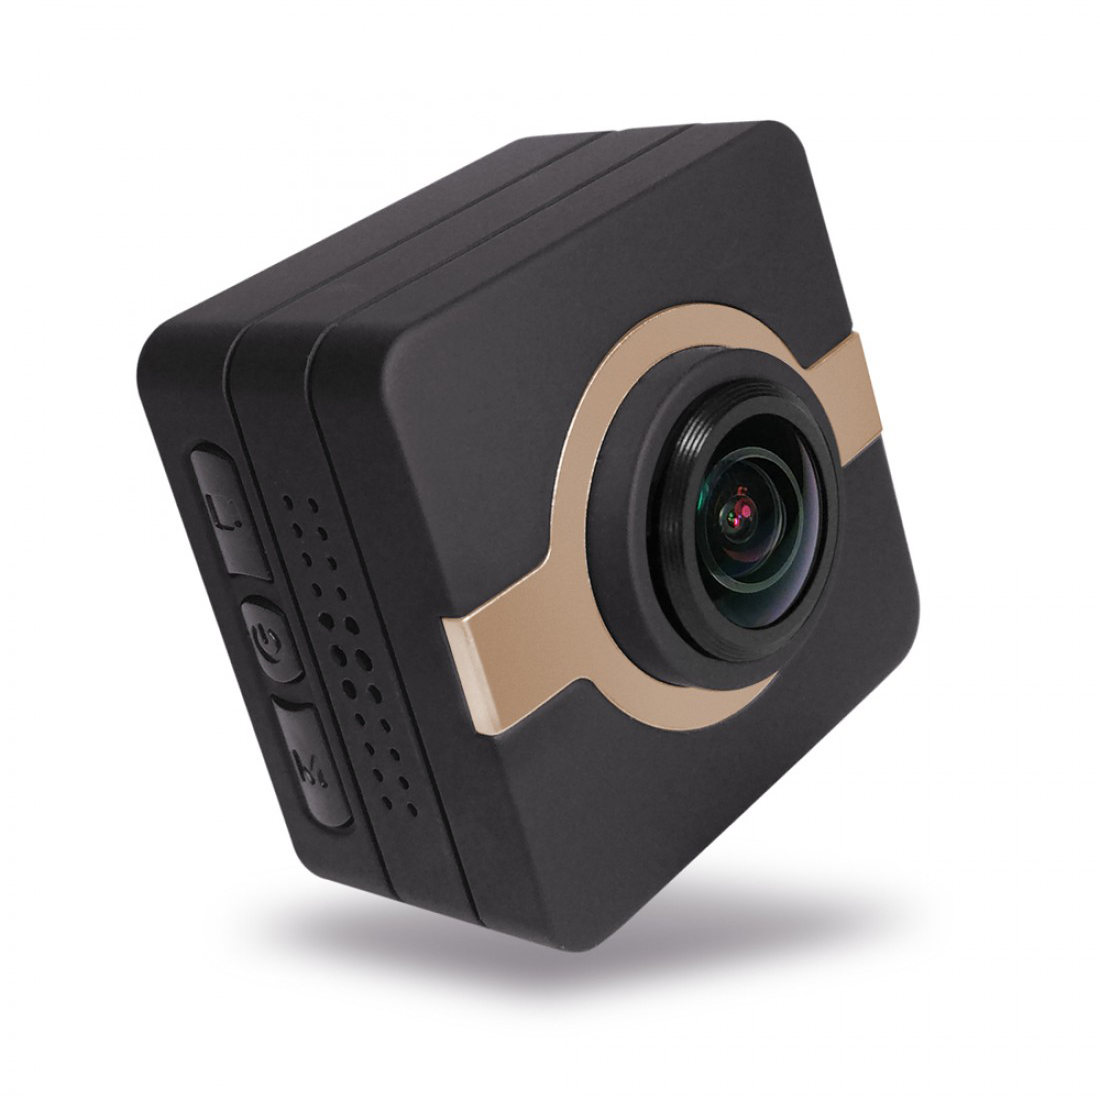 Matecam X1 Mini Action מצלמה לוח מחוונים לרכב מקליט מצלמת מצלמה 4K-HI Ultra HD עמיד למים DV מצלמת וידאו 16MP 160 מעלות זווית רחבה WIFI/חיישן ג'ירו/גיירו ייצוב/זיהוי תנועה/שלט רחוק מיני DVR מפתחות לרכב מיקרו RC מצלמת אופניים קסדת מצלמת חום